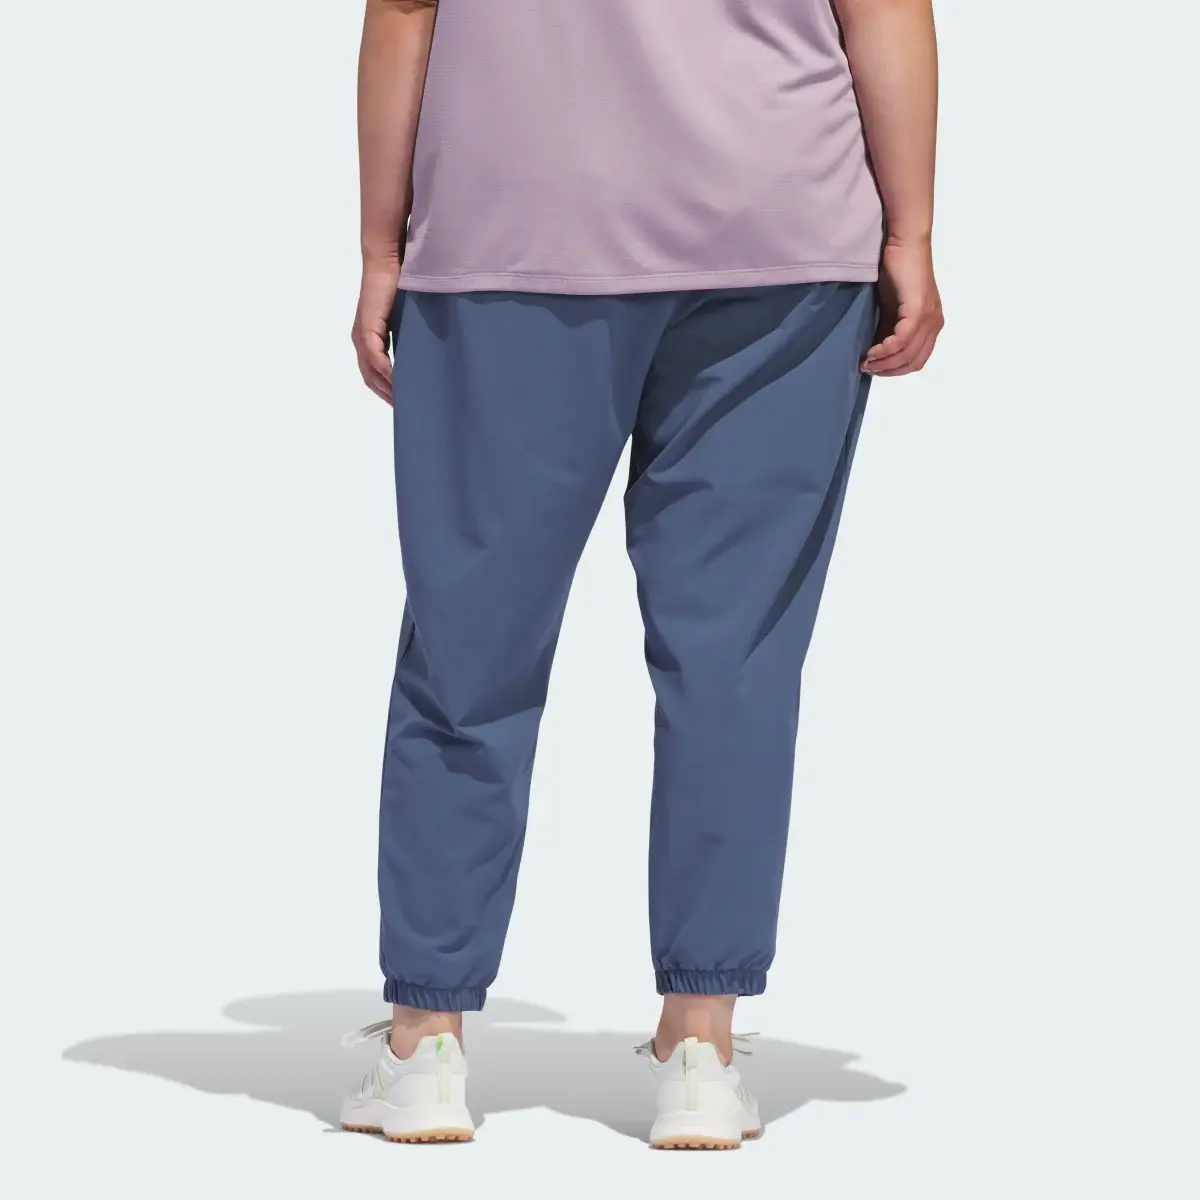 Adidas Spodnie dresowe Women's Ultimate365 (Plus Size). 2